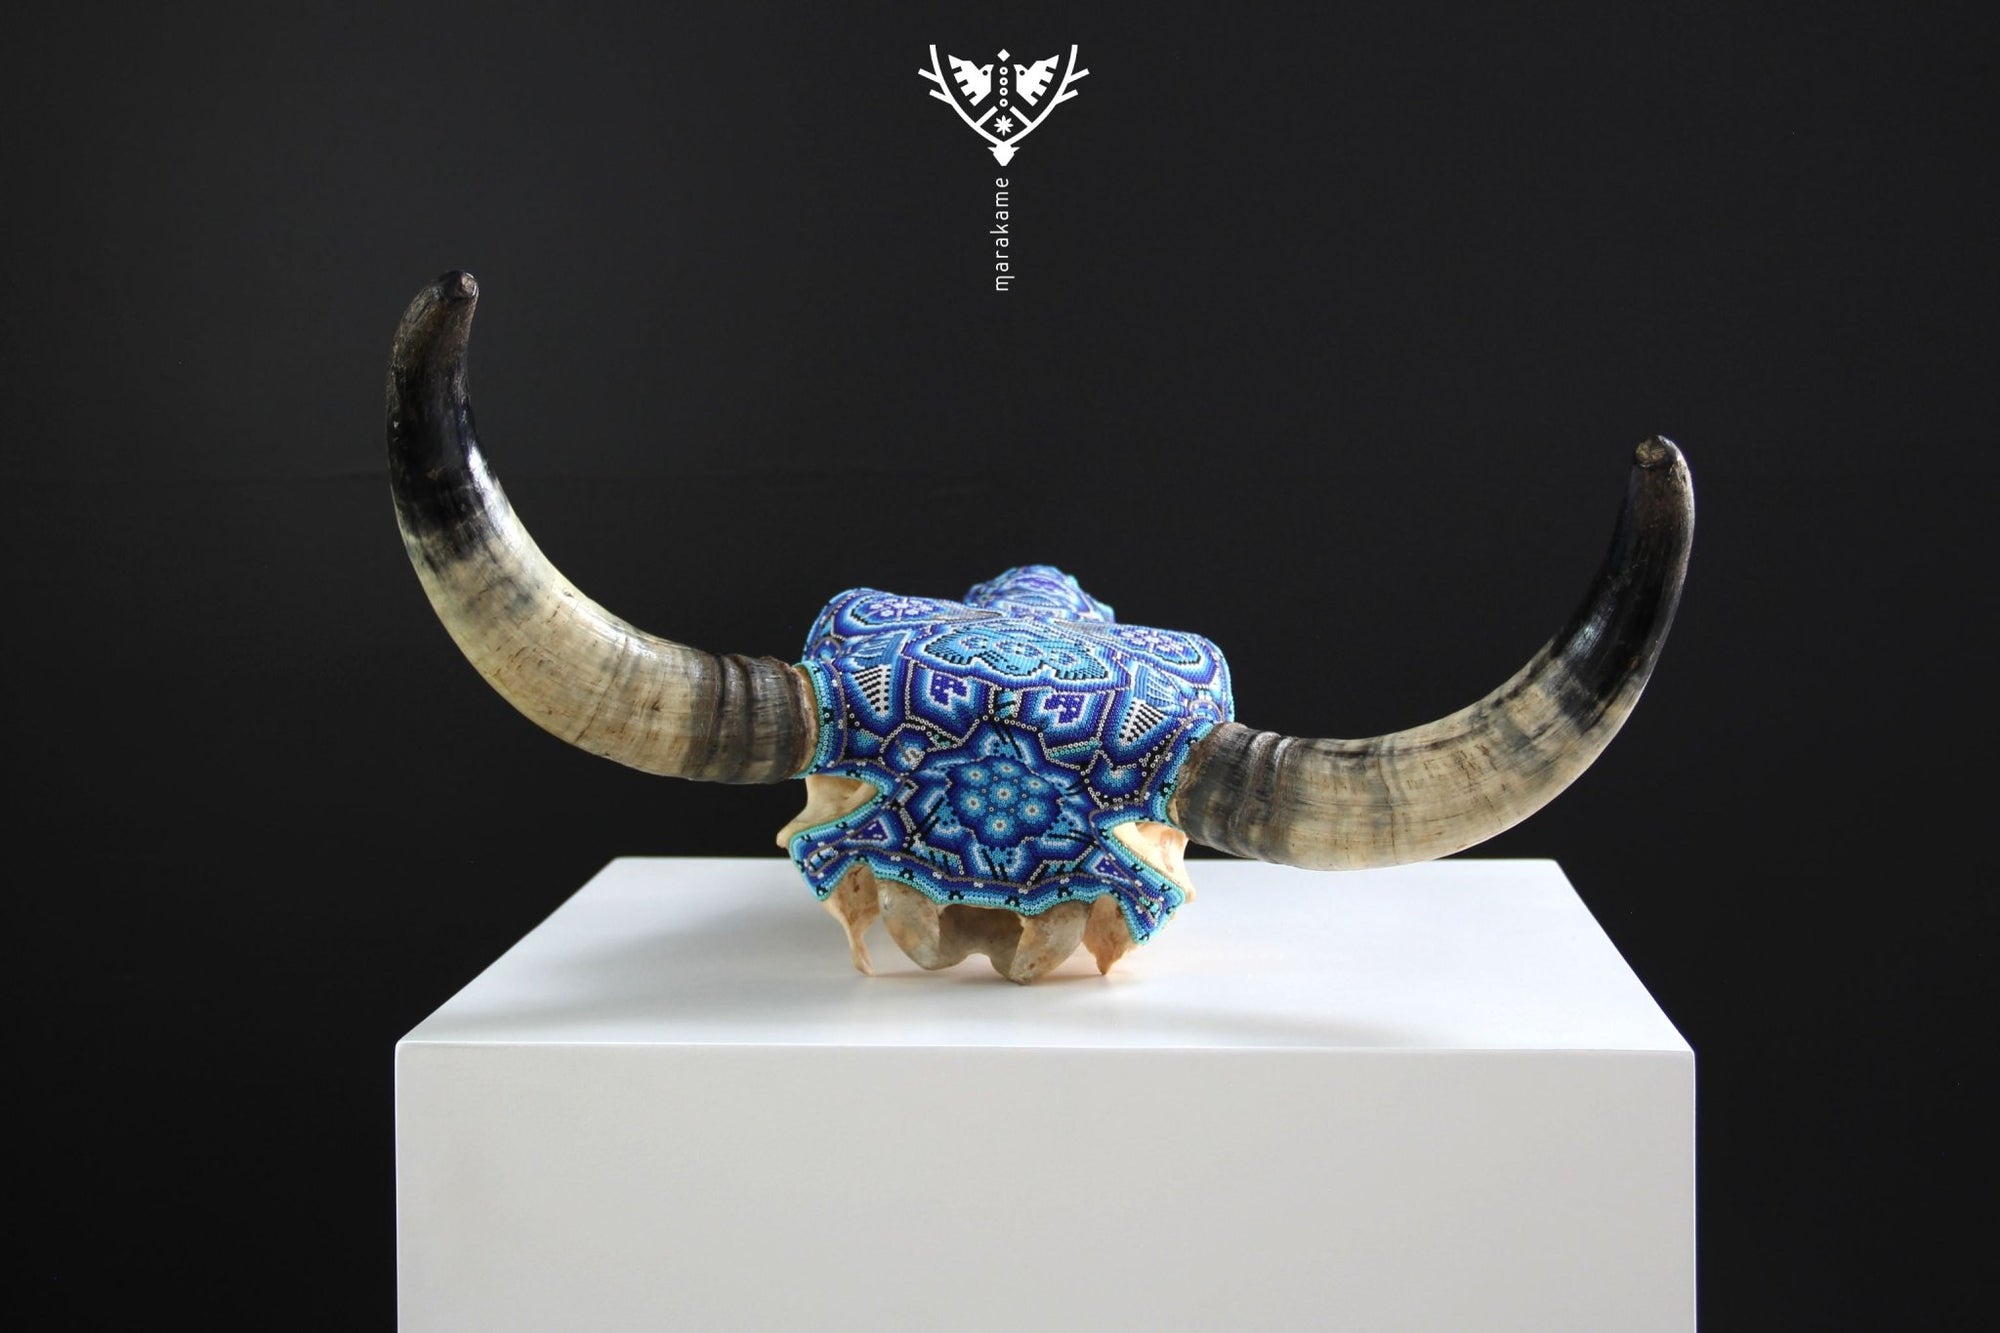 牛の頭蓋骨のウイチョル アート - ムウィエリ ユアウィ - ウイチョル アート - マラカメ